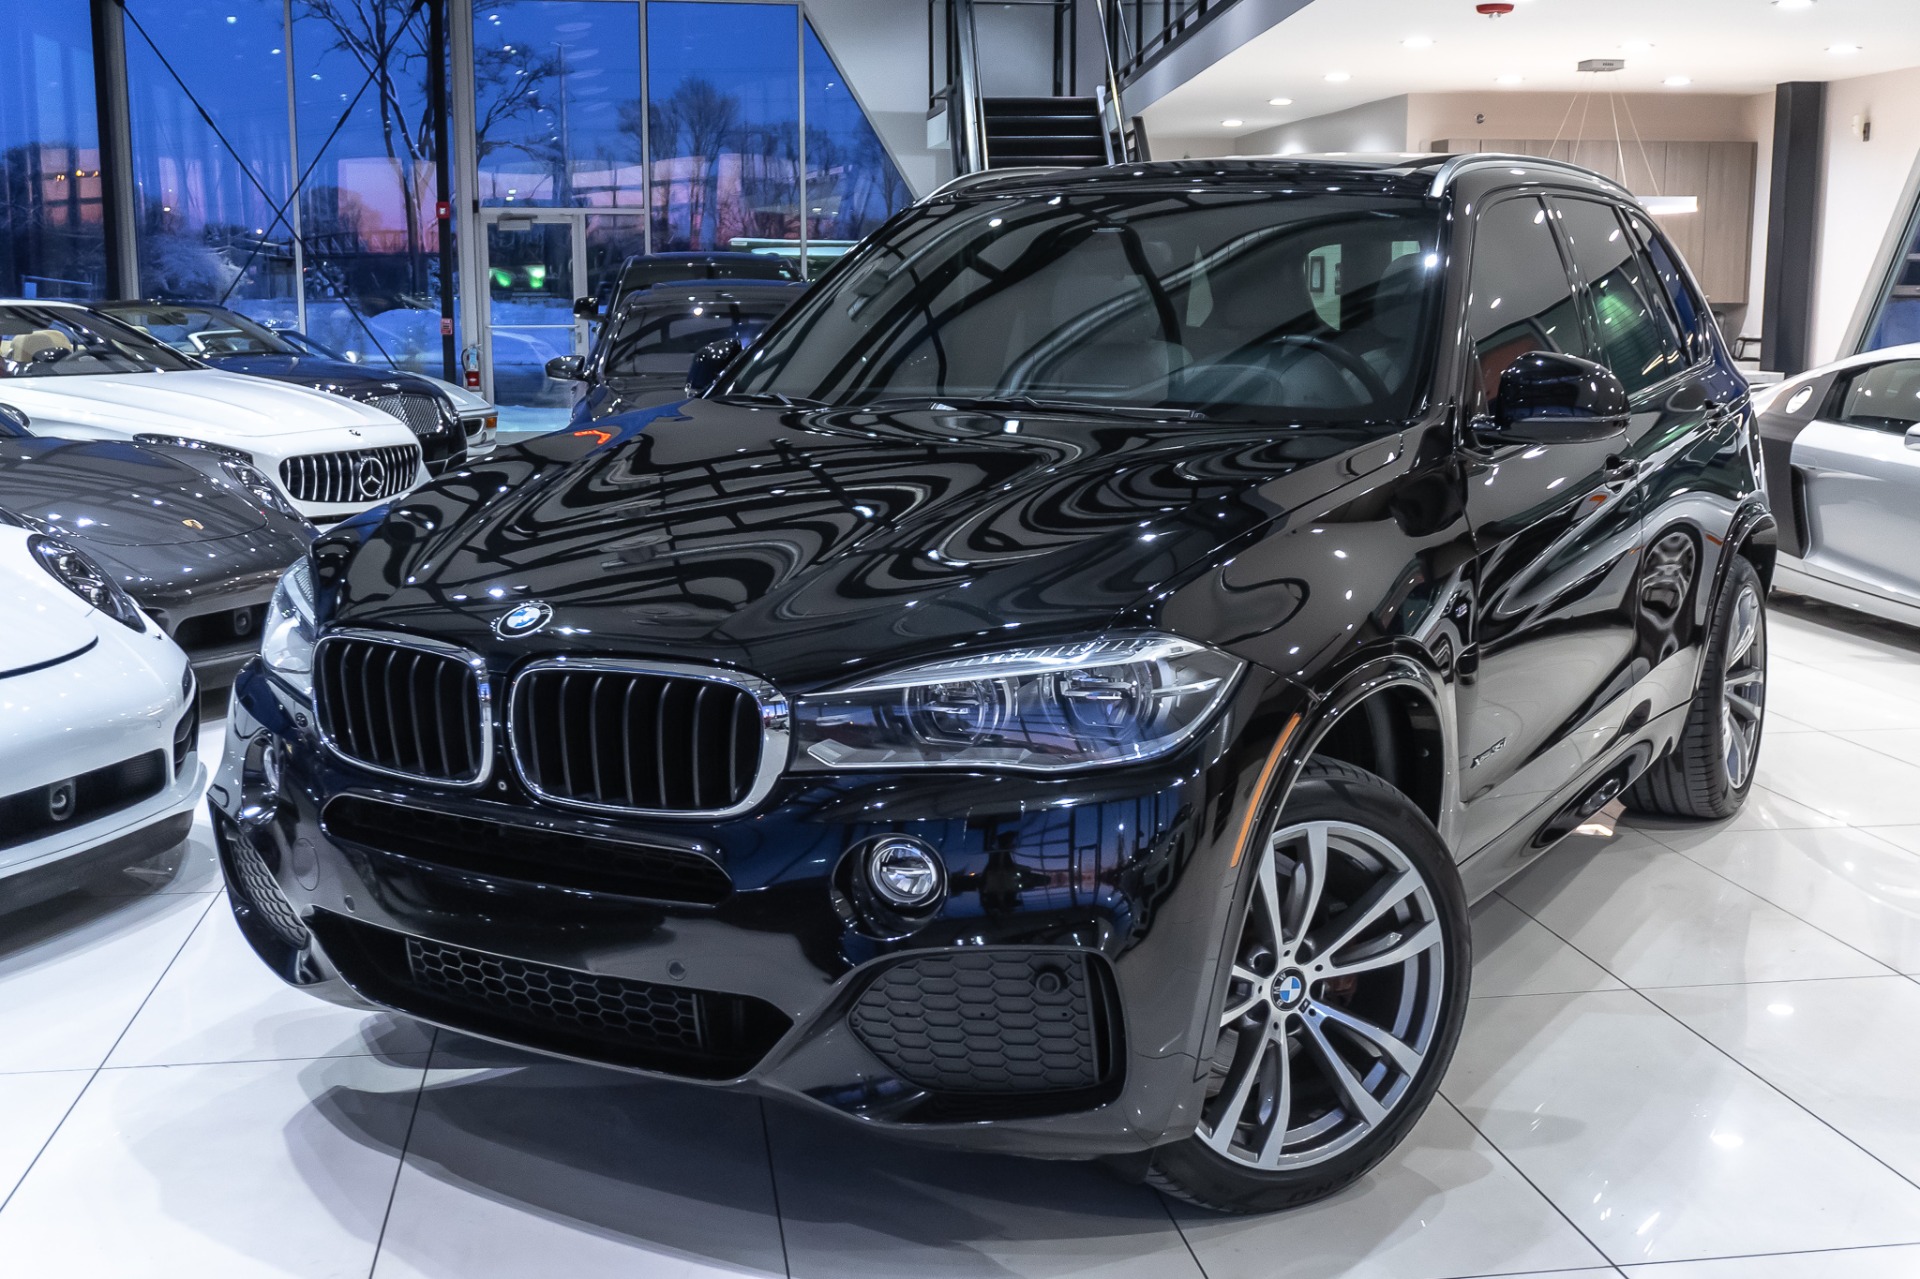 Used-2016-BMW-X5-xDrive35i-M-Sport-SUV-Drivers-Asst-Plus-Premium-Pkg-MSRP-73k